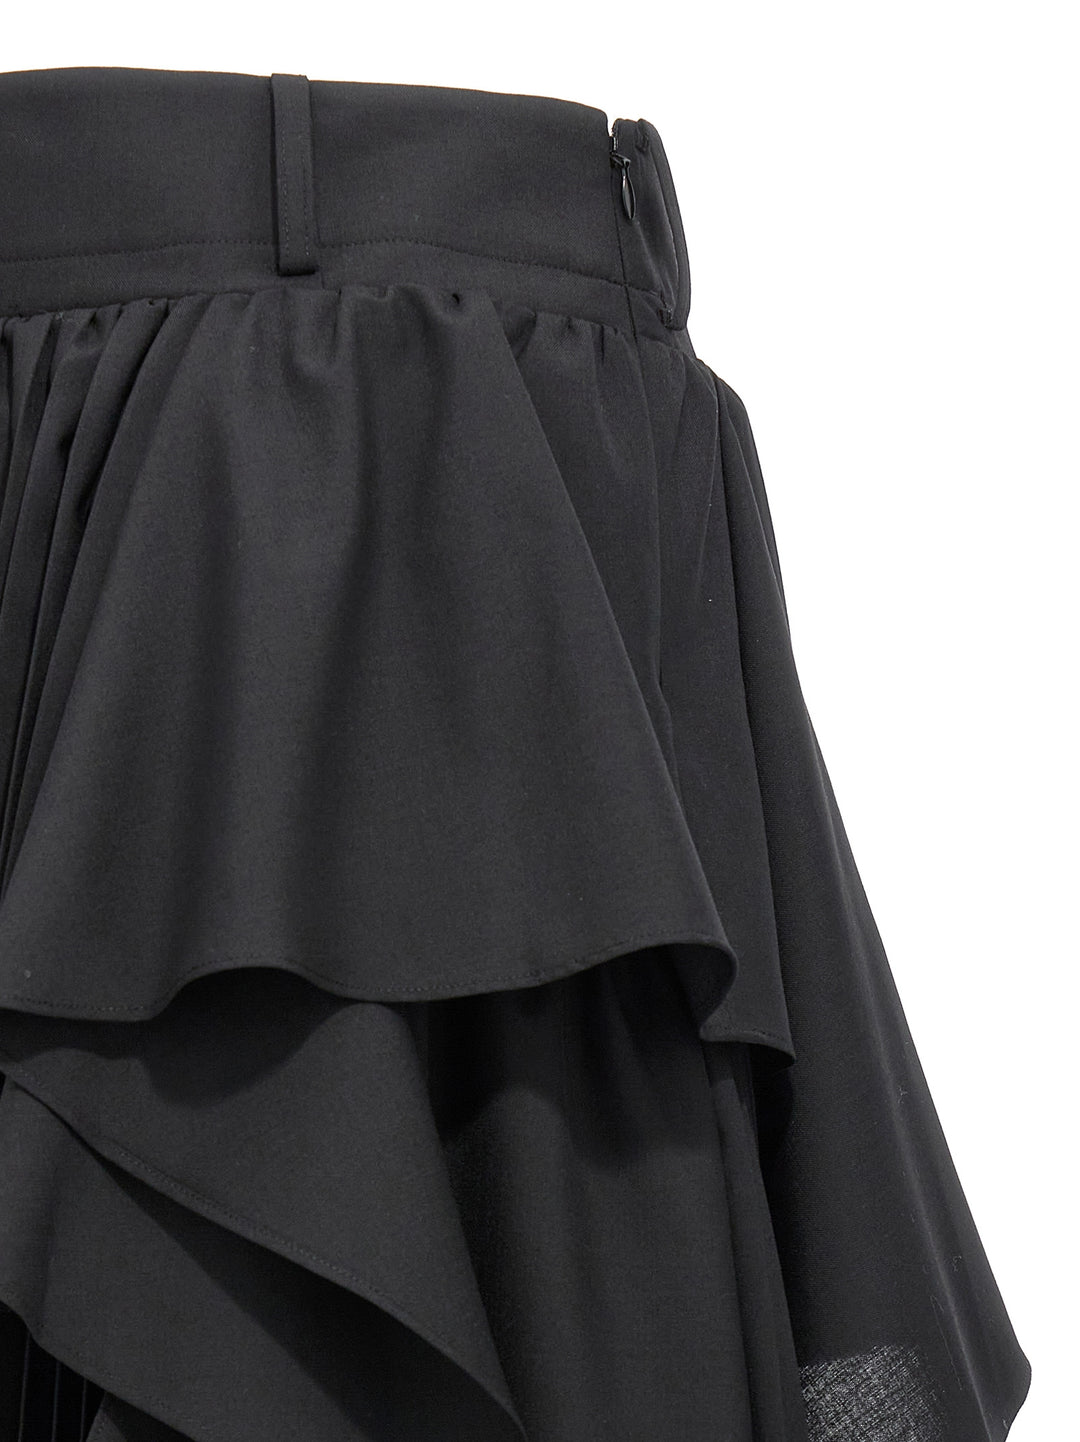 Asymmetrical Long Skirt Gonne Nero